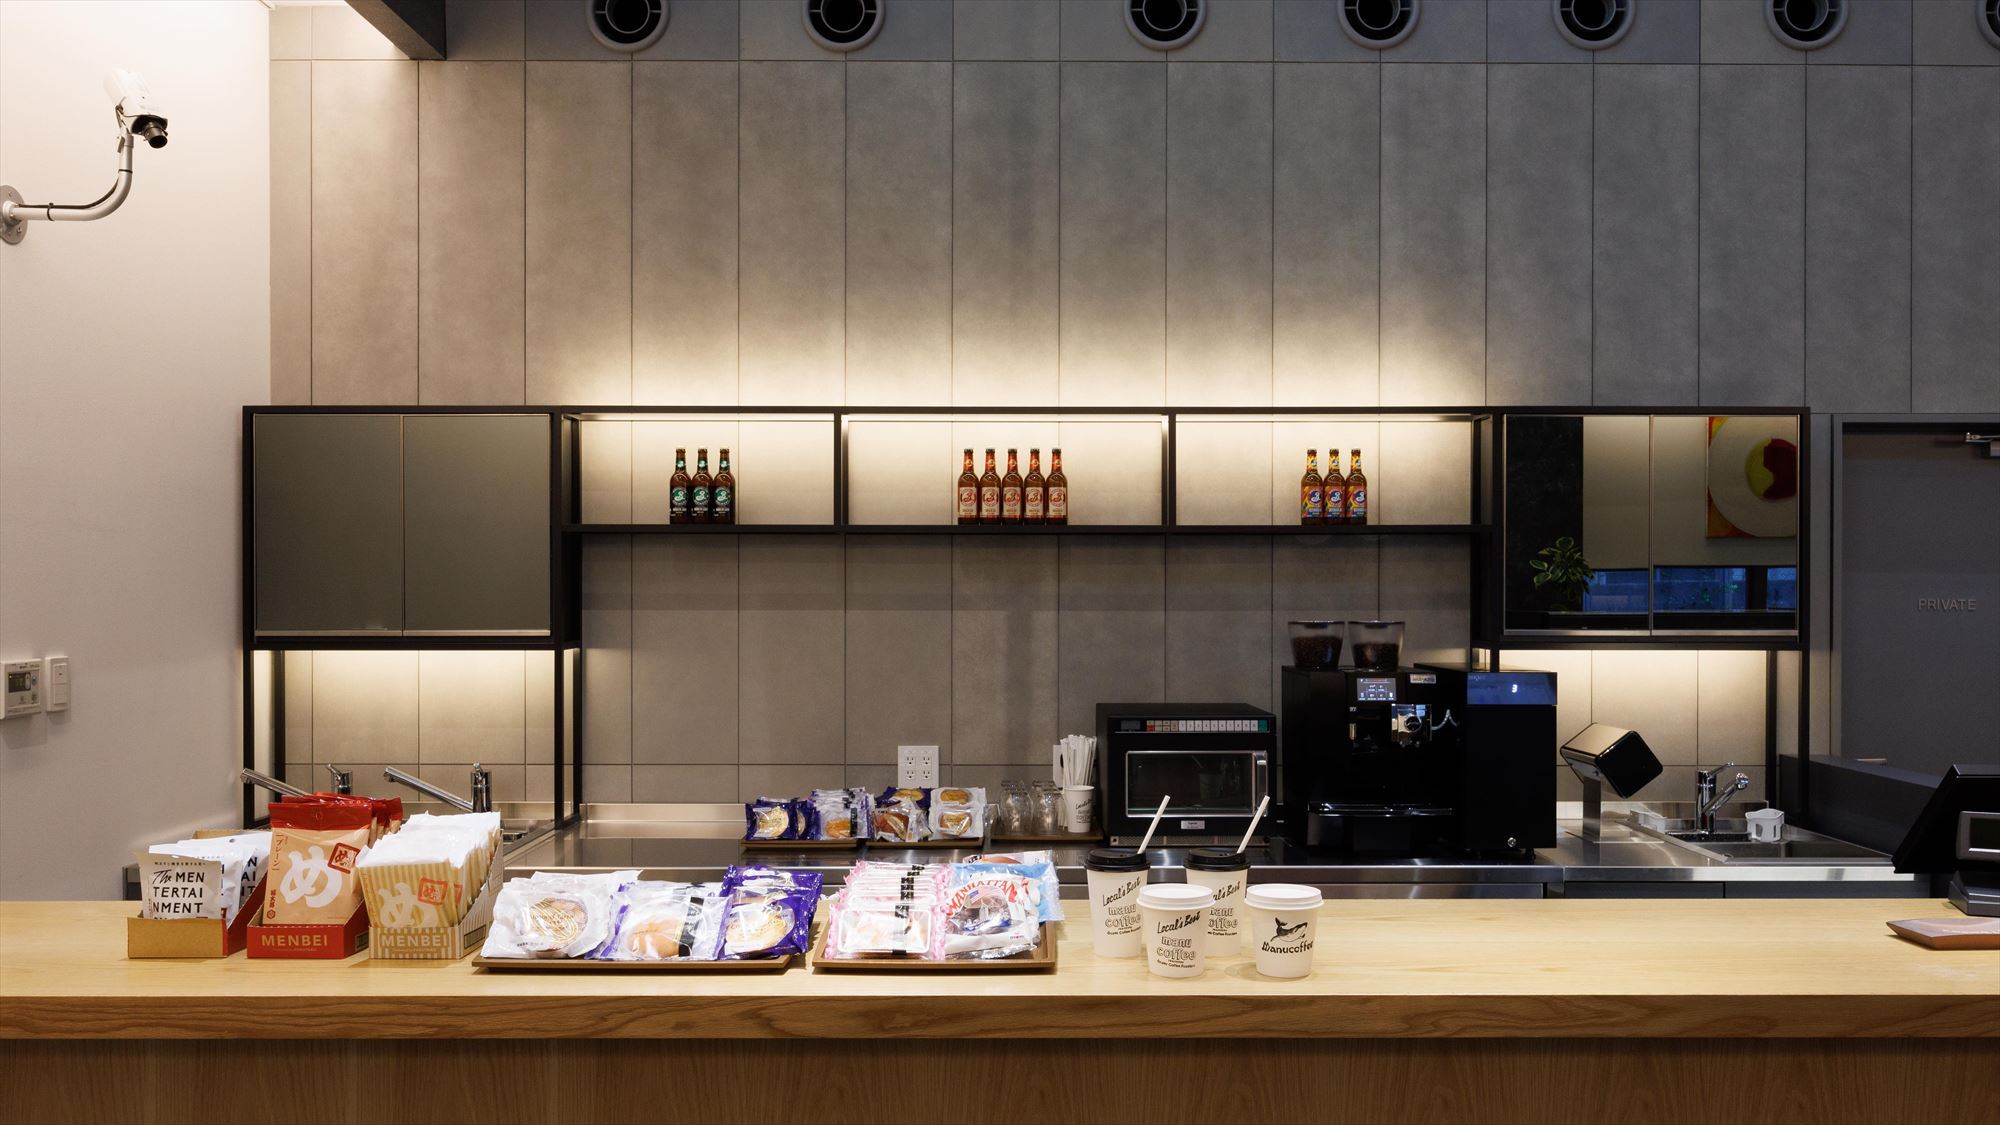 【カフェ&バー】レセプション横のカフェ&バーでは軽食やドリンクを販売しております。